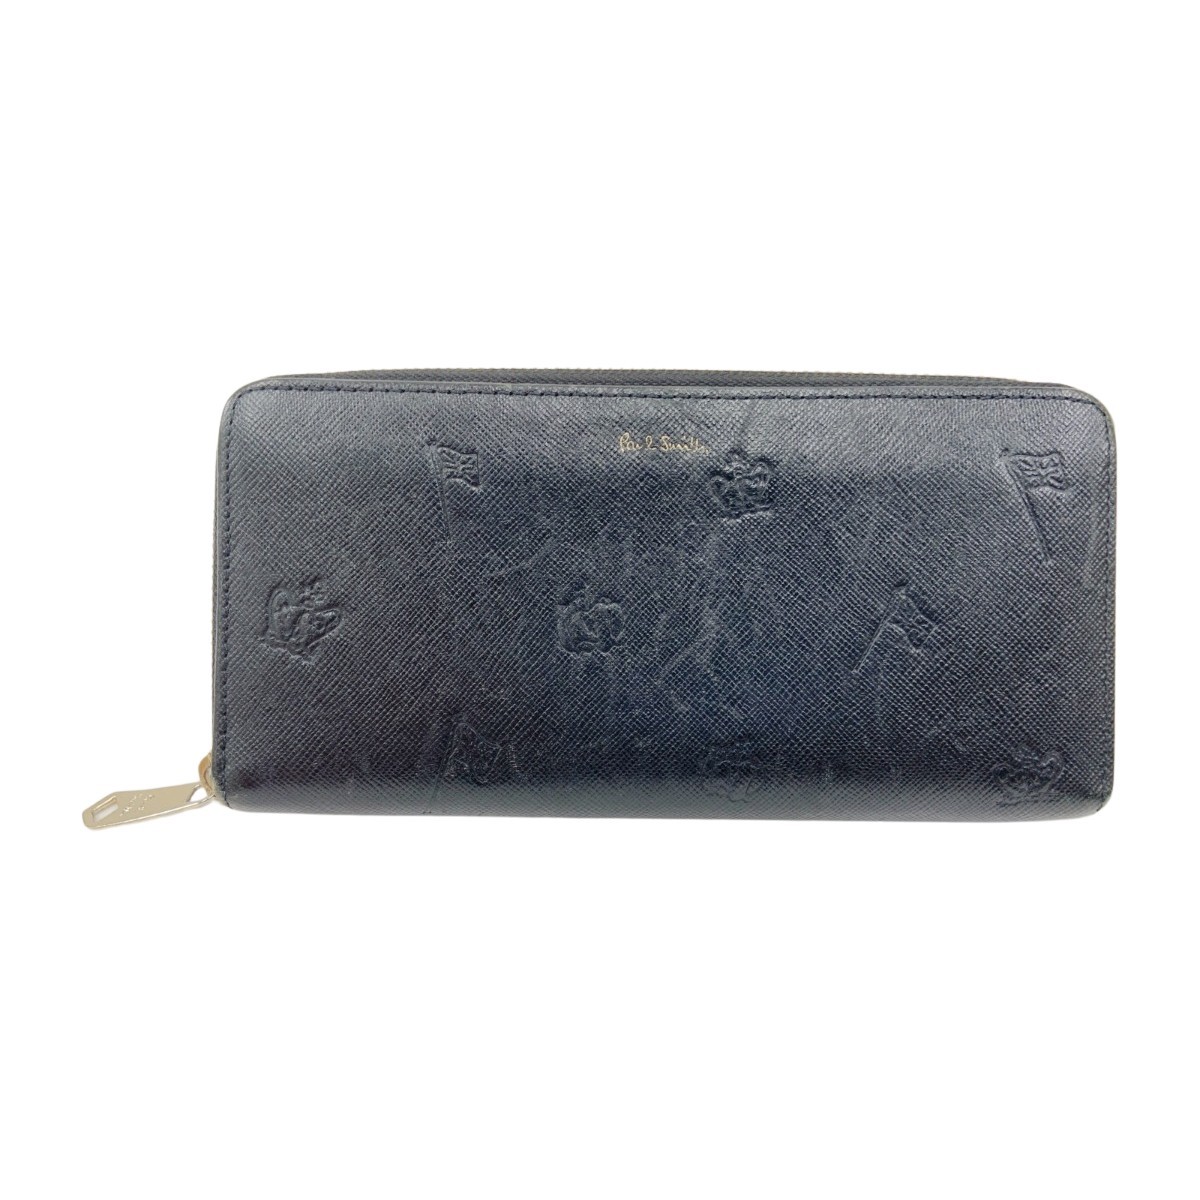 日本最大のブランド Smith Paul 〇〇 ポールスミス やや傷や汚れあり ブラック P955 873-584 長財布 ポールドローイング 財布